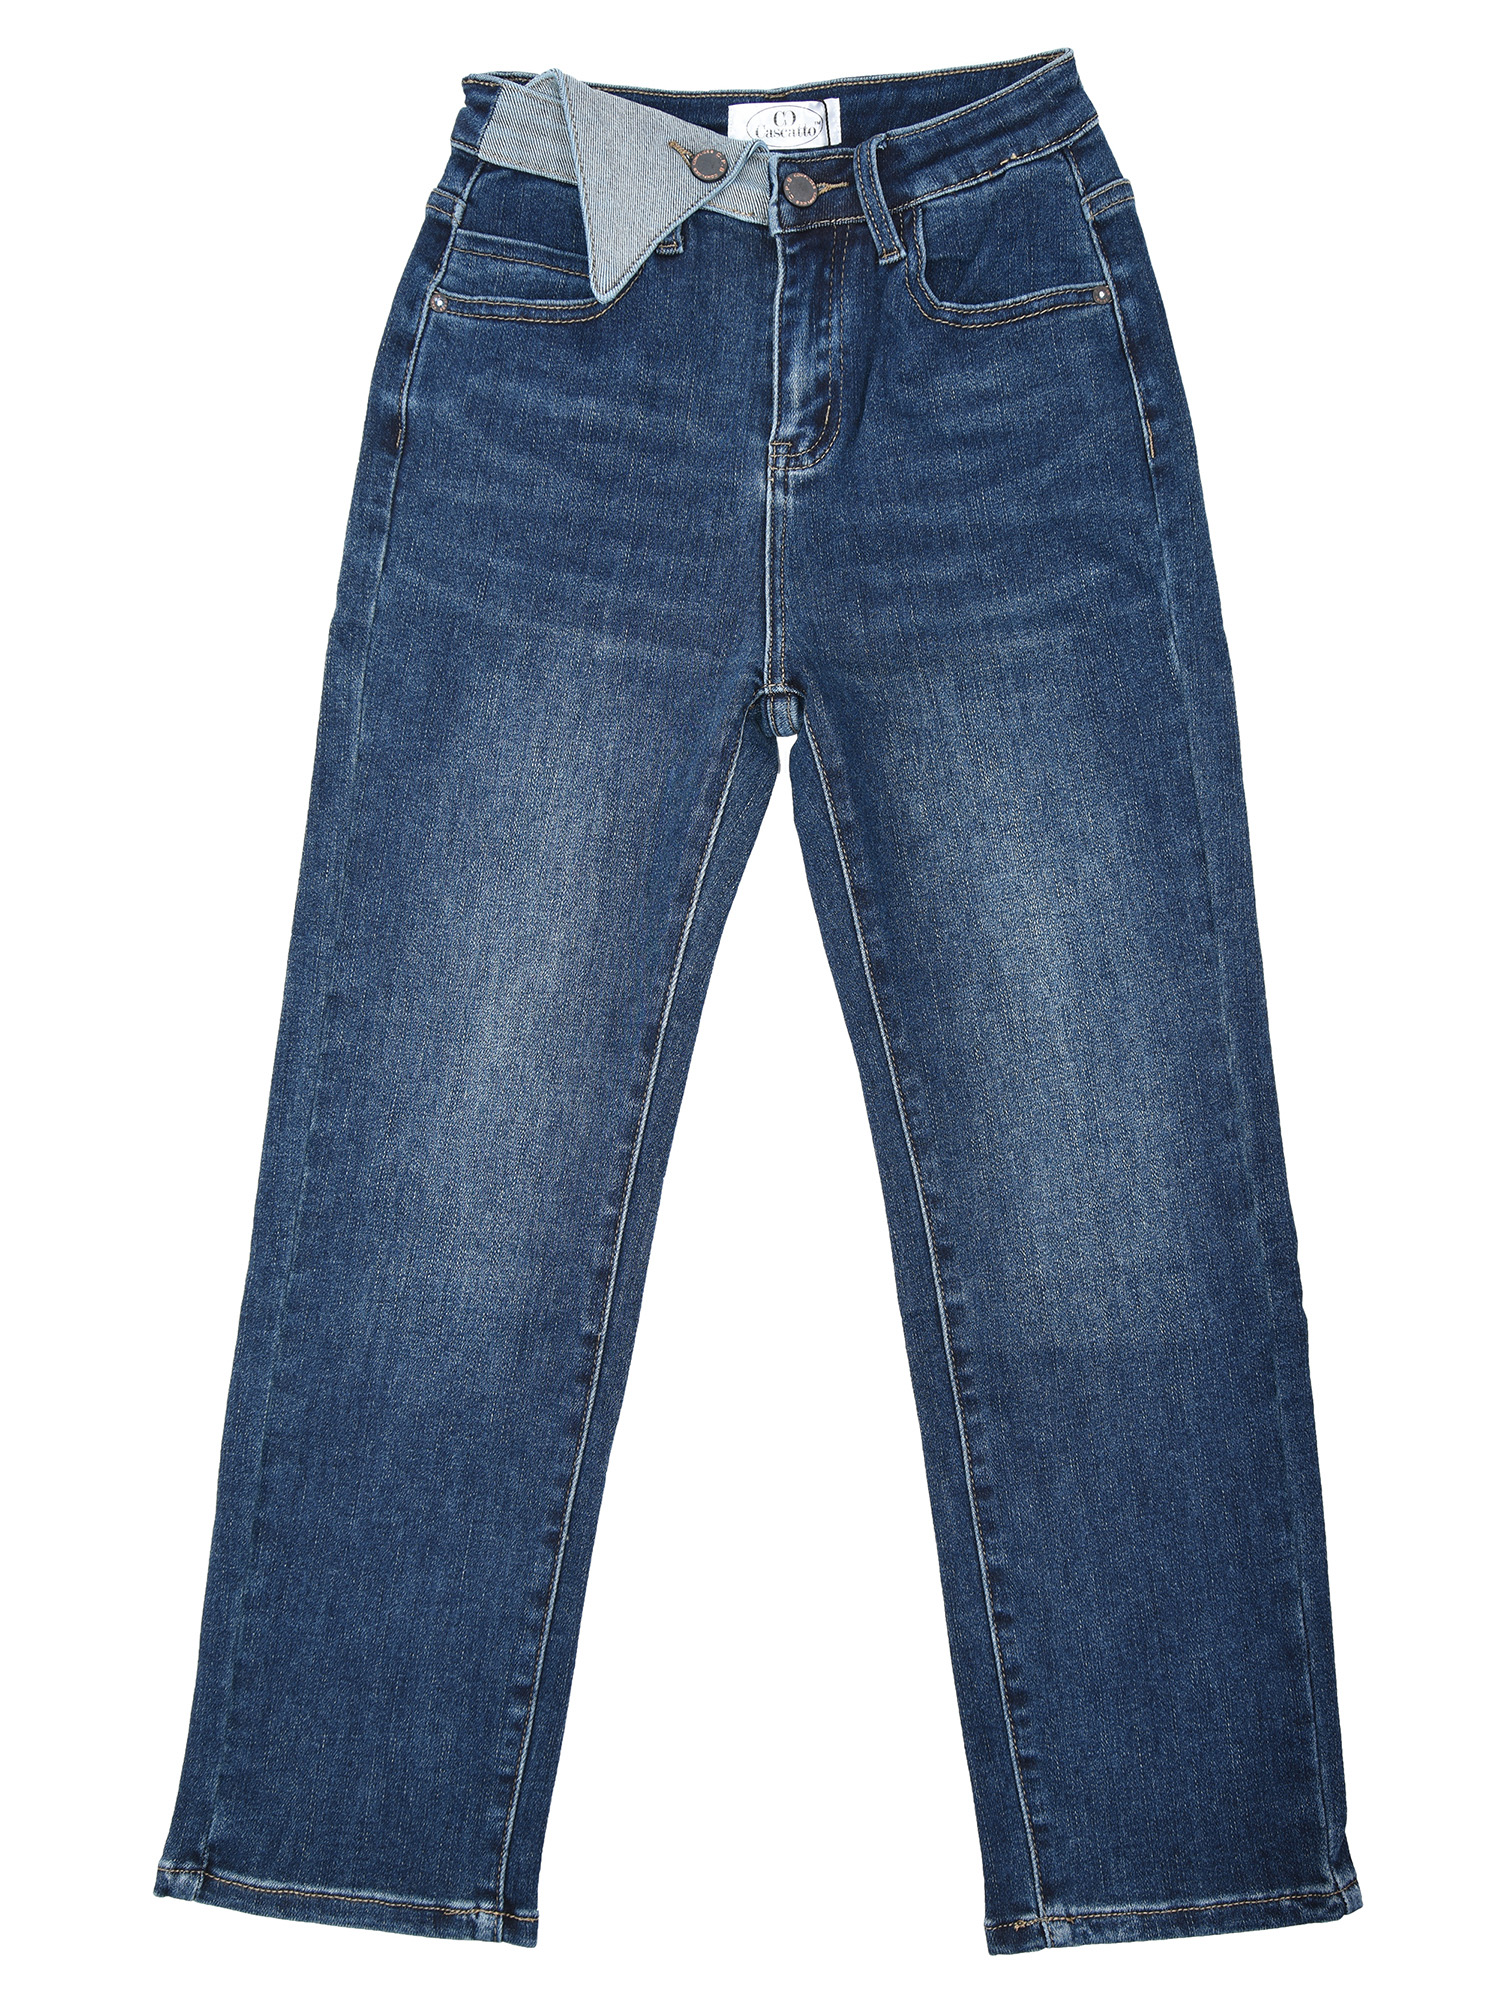 Купить Брюки женские джинсовые 22DGG19 синий